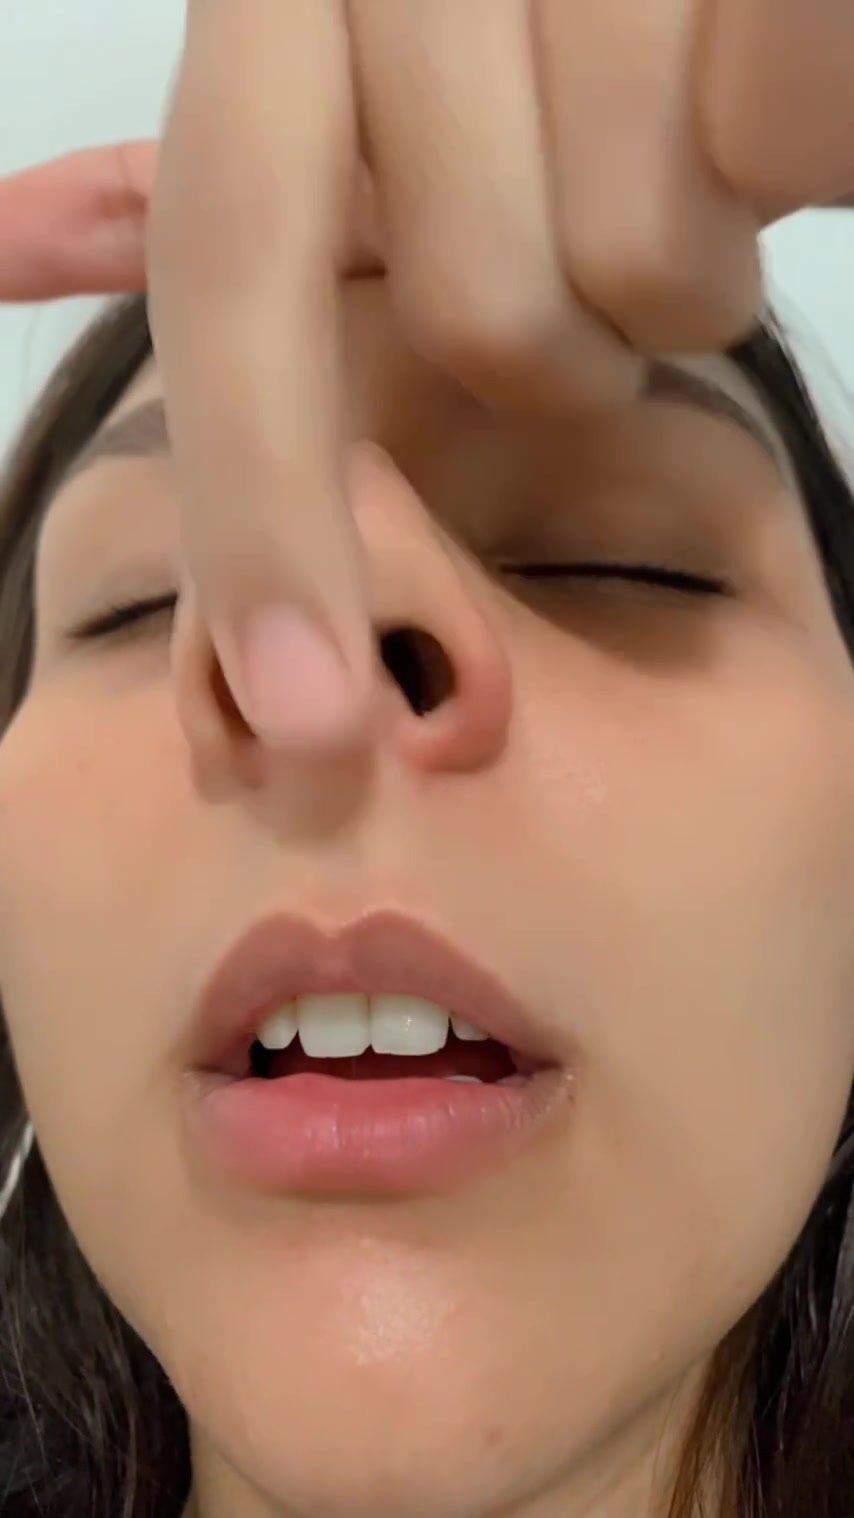 Girlfriend's nostrils